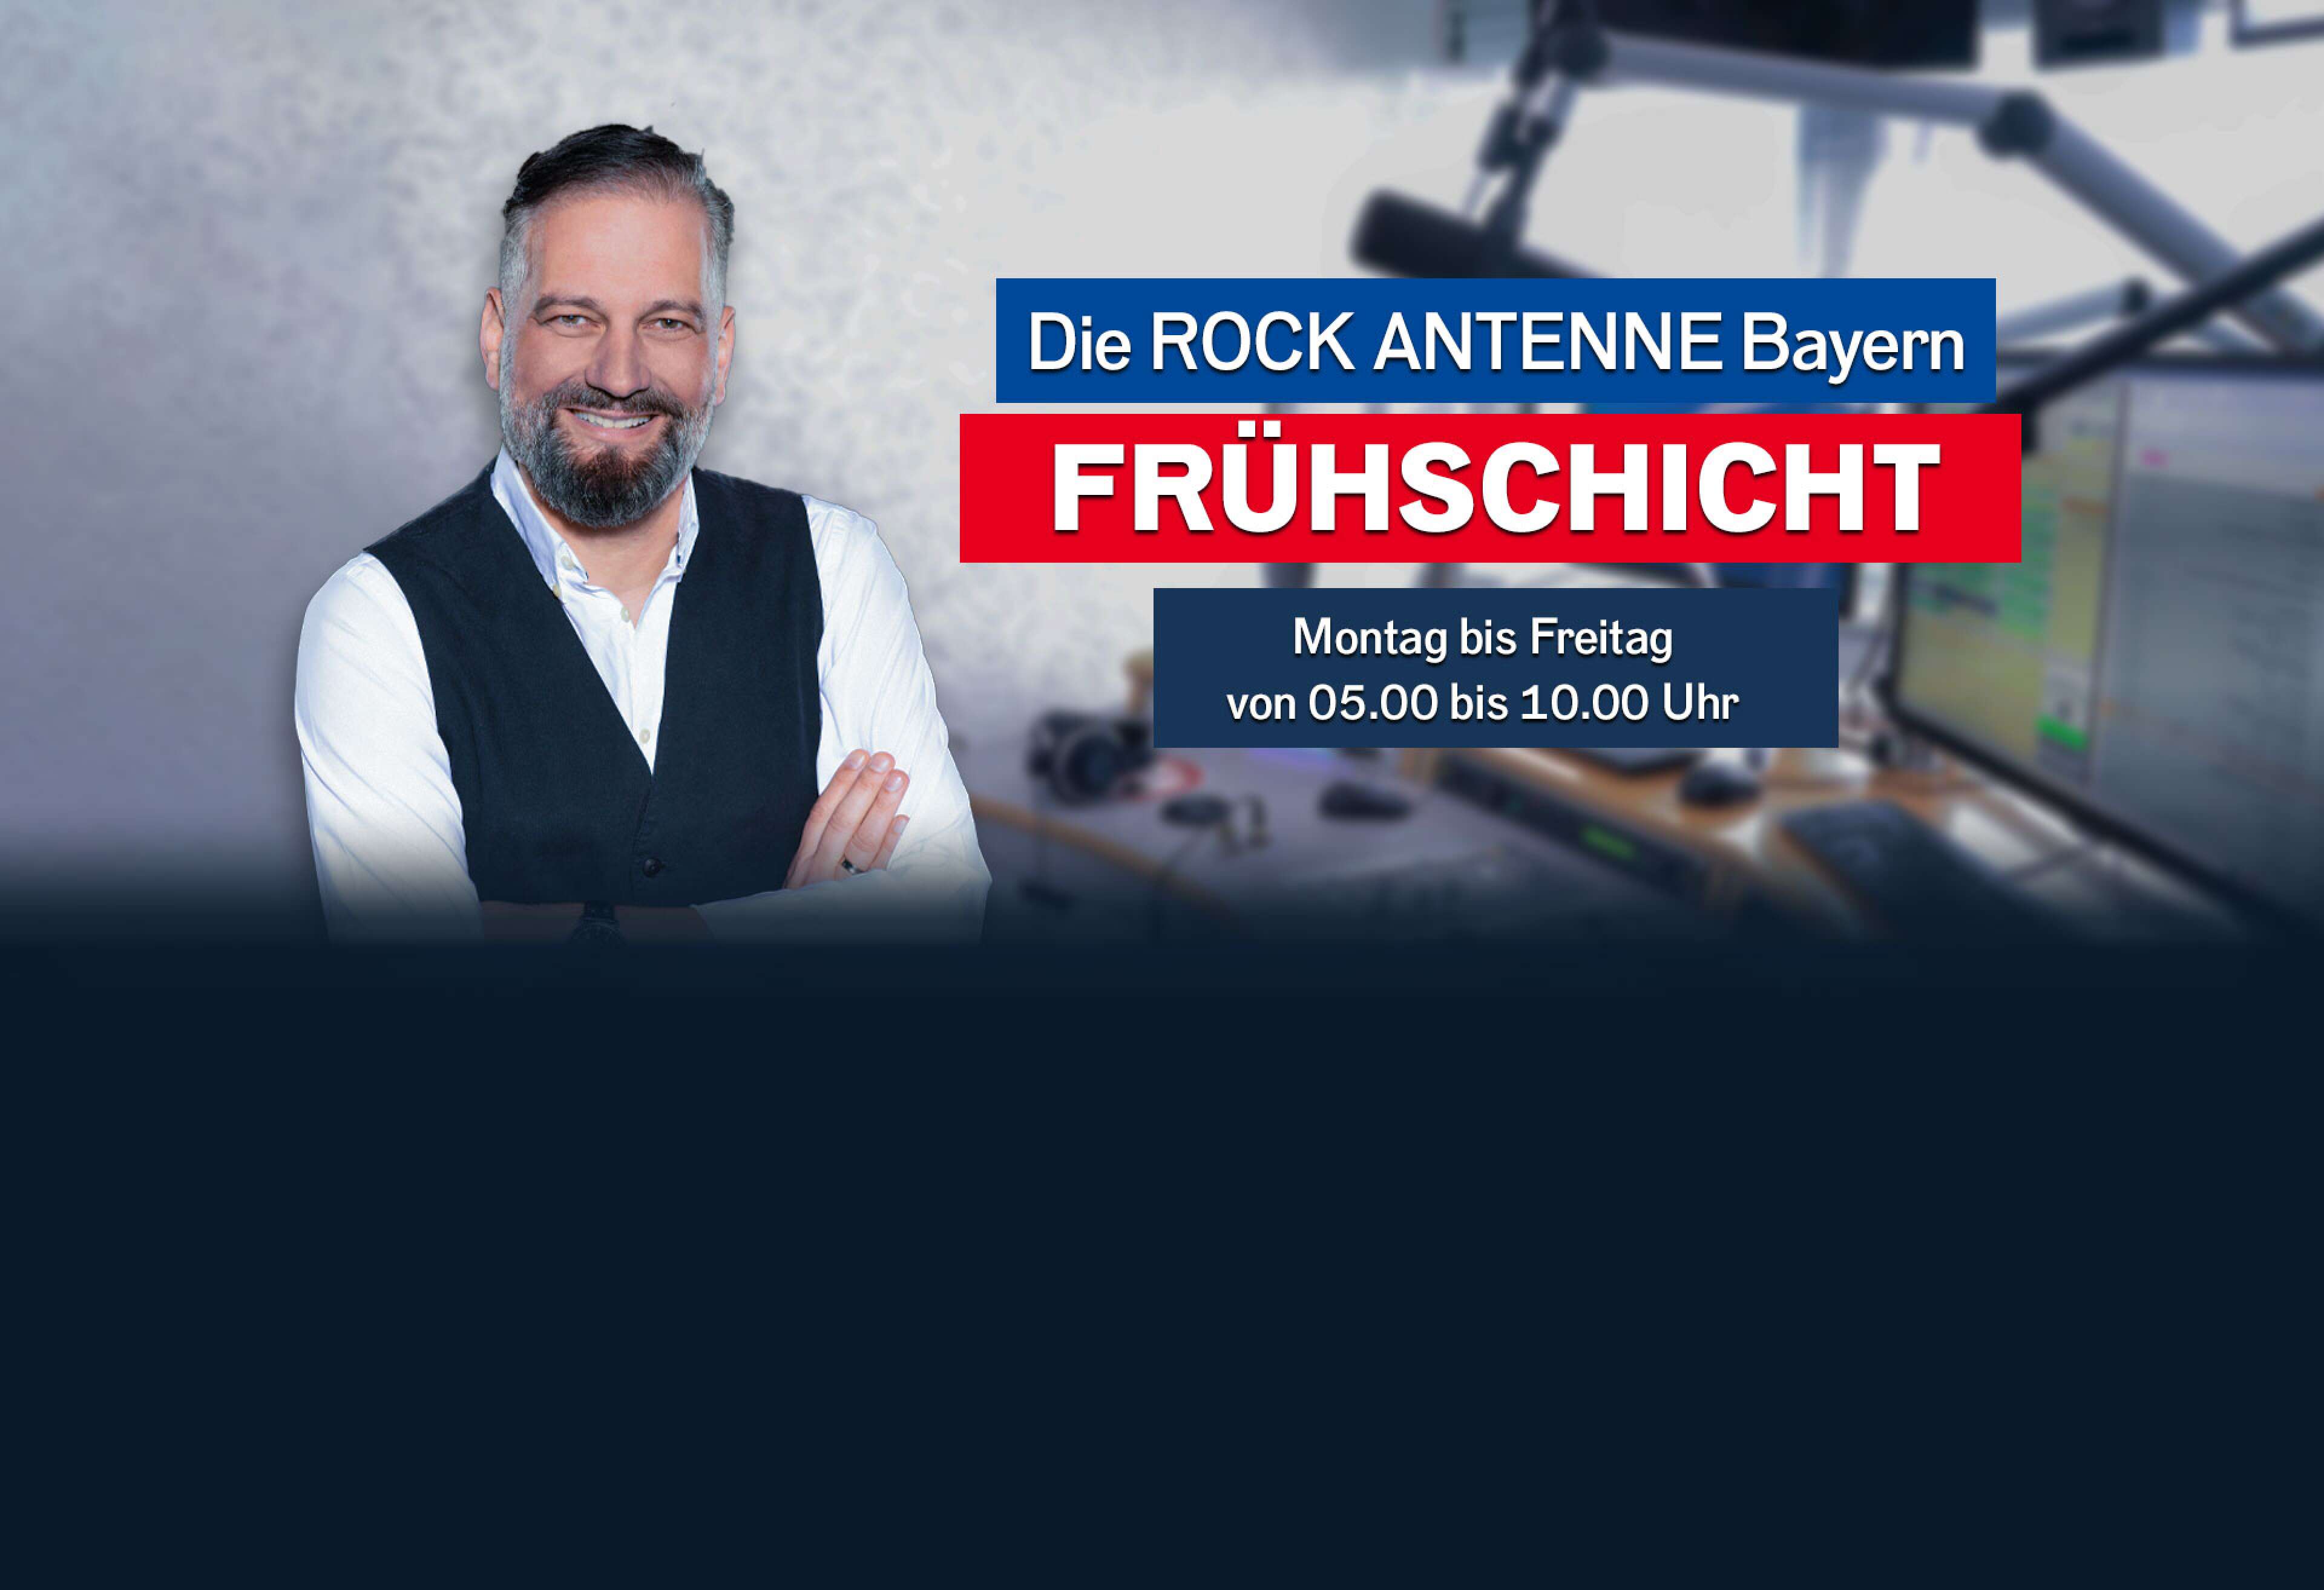 Barny Barnsteiner mit der Aufschrift "Die ROCK ANTENNE Bayern Frühschicht - Montag bis Freitag von 05.00 bis 10.00 Uhr""